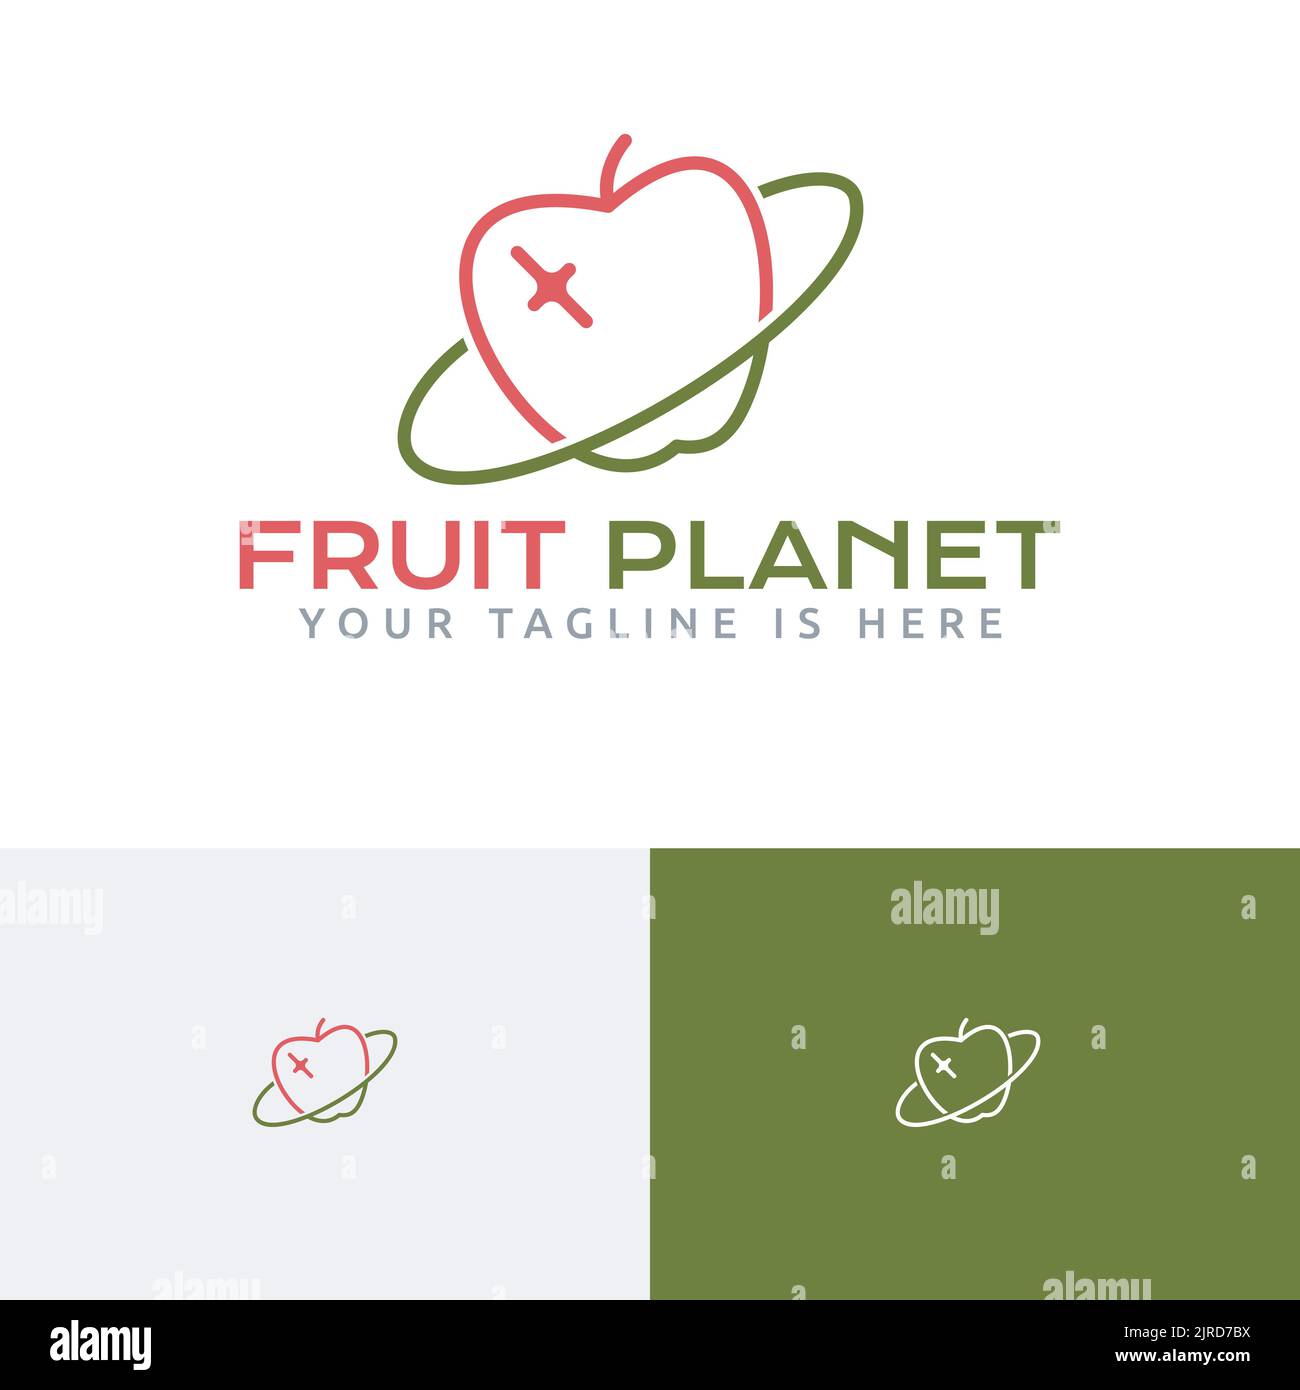 Fruit Planet Apple Star Einzigartiges Monoline Logo Stock Vektor